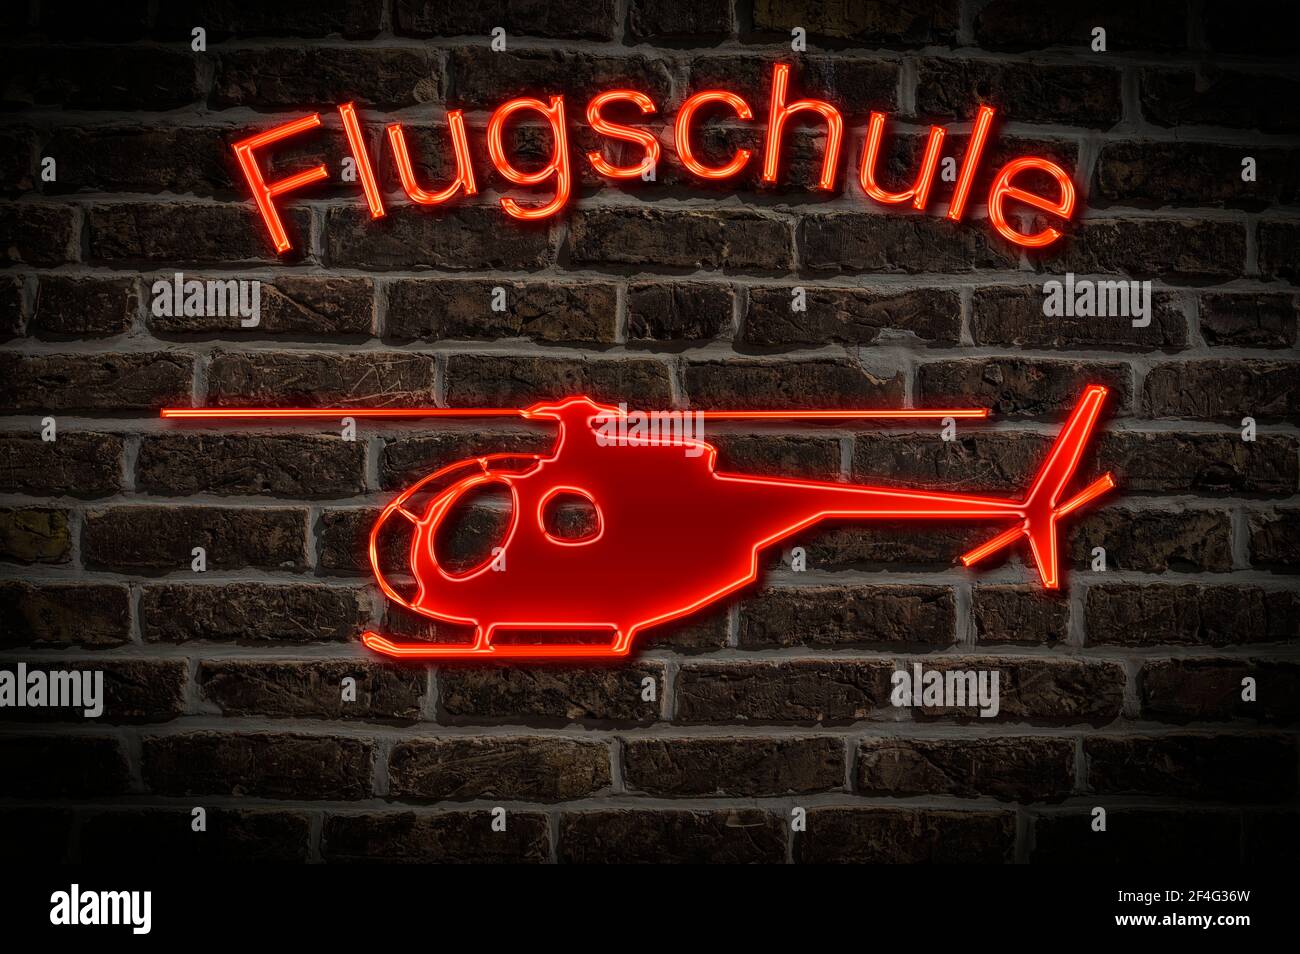 Leuchtreklame for a Flugschule a Hubrauber confind than the Neon-Schrift Leuchtwerbung für eine Flugschule ein Helicopt Stockfoto